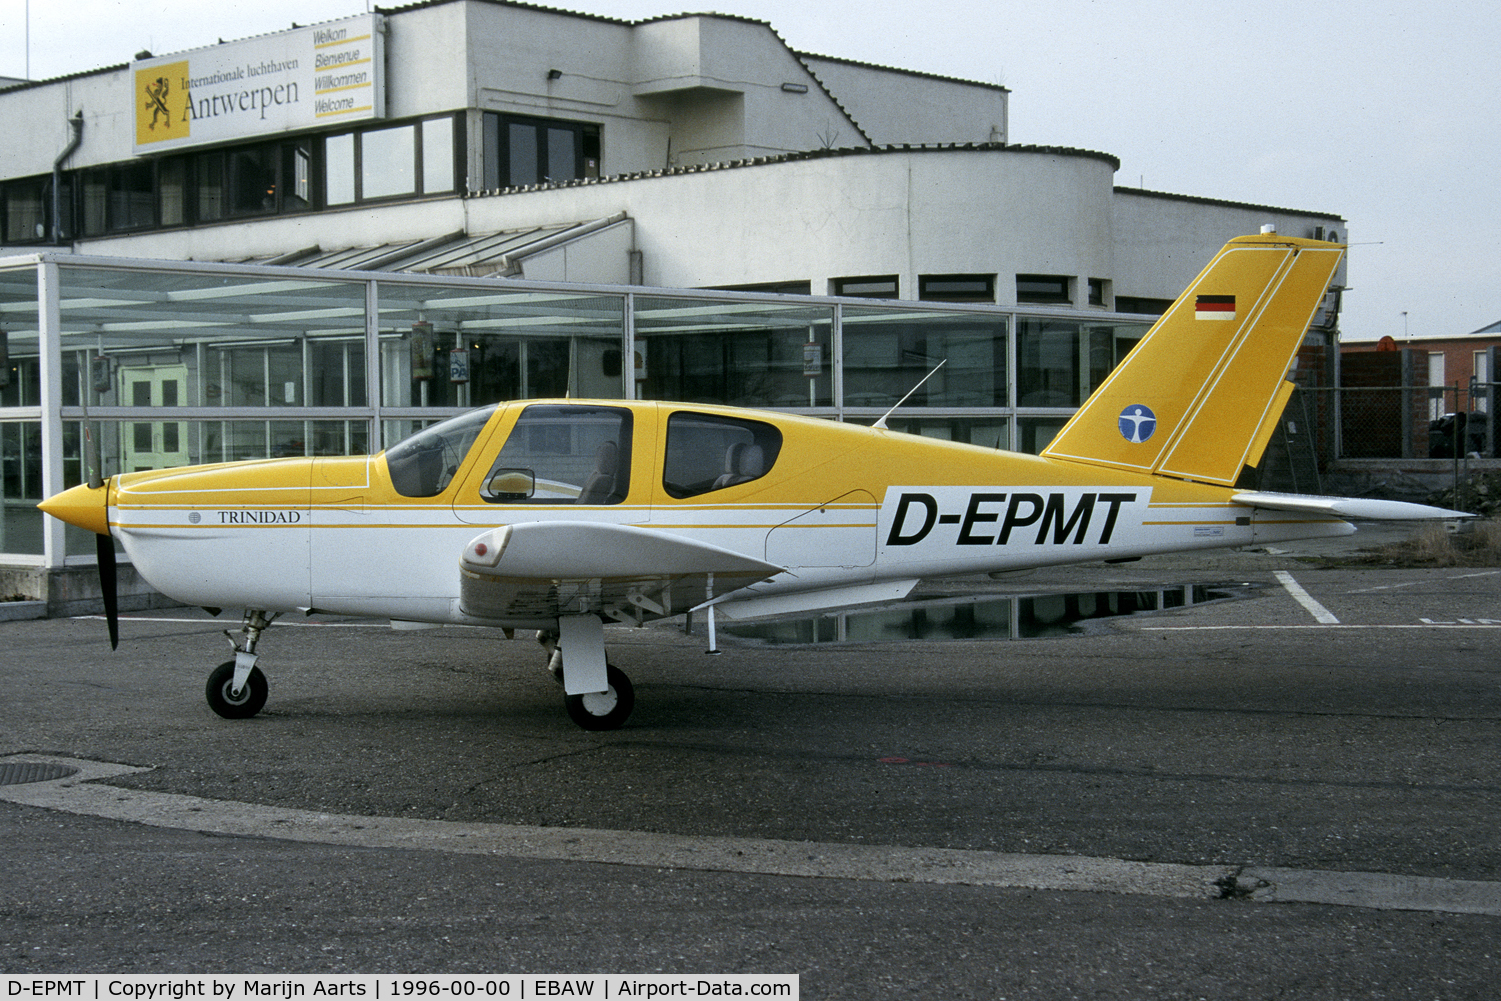 D-EPMT, 1985 Socata TB-20 Trinidad C/N 560, seen at Antwerpen-Deurne